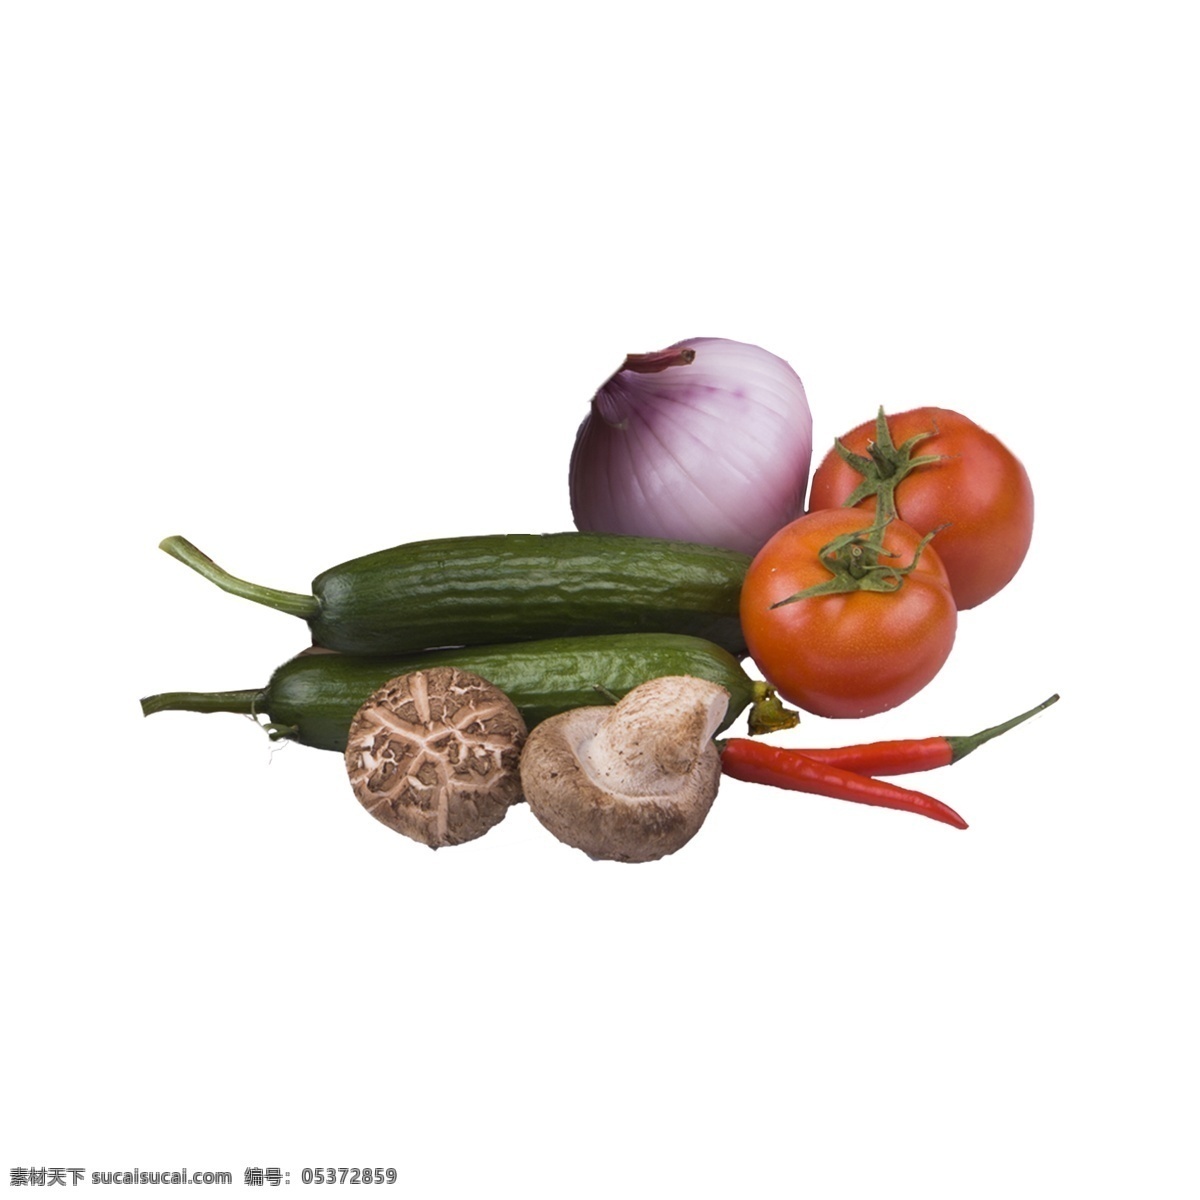 蔬菜 组合 实拍 免 抠 新鲜 营养 植物 食材 粮食 摄影图 菜品 蔬菜组合 实物 拍摄